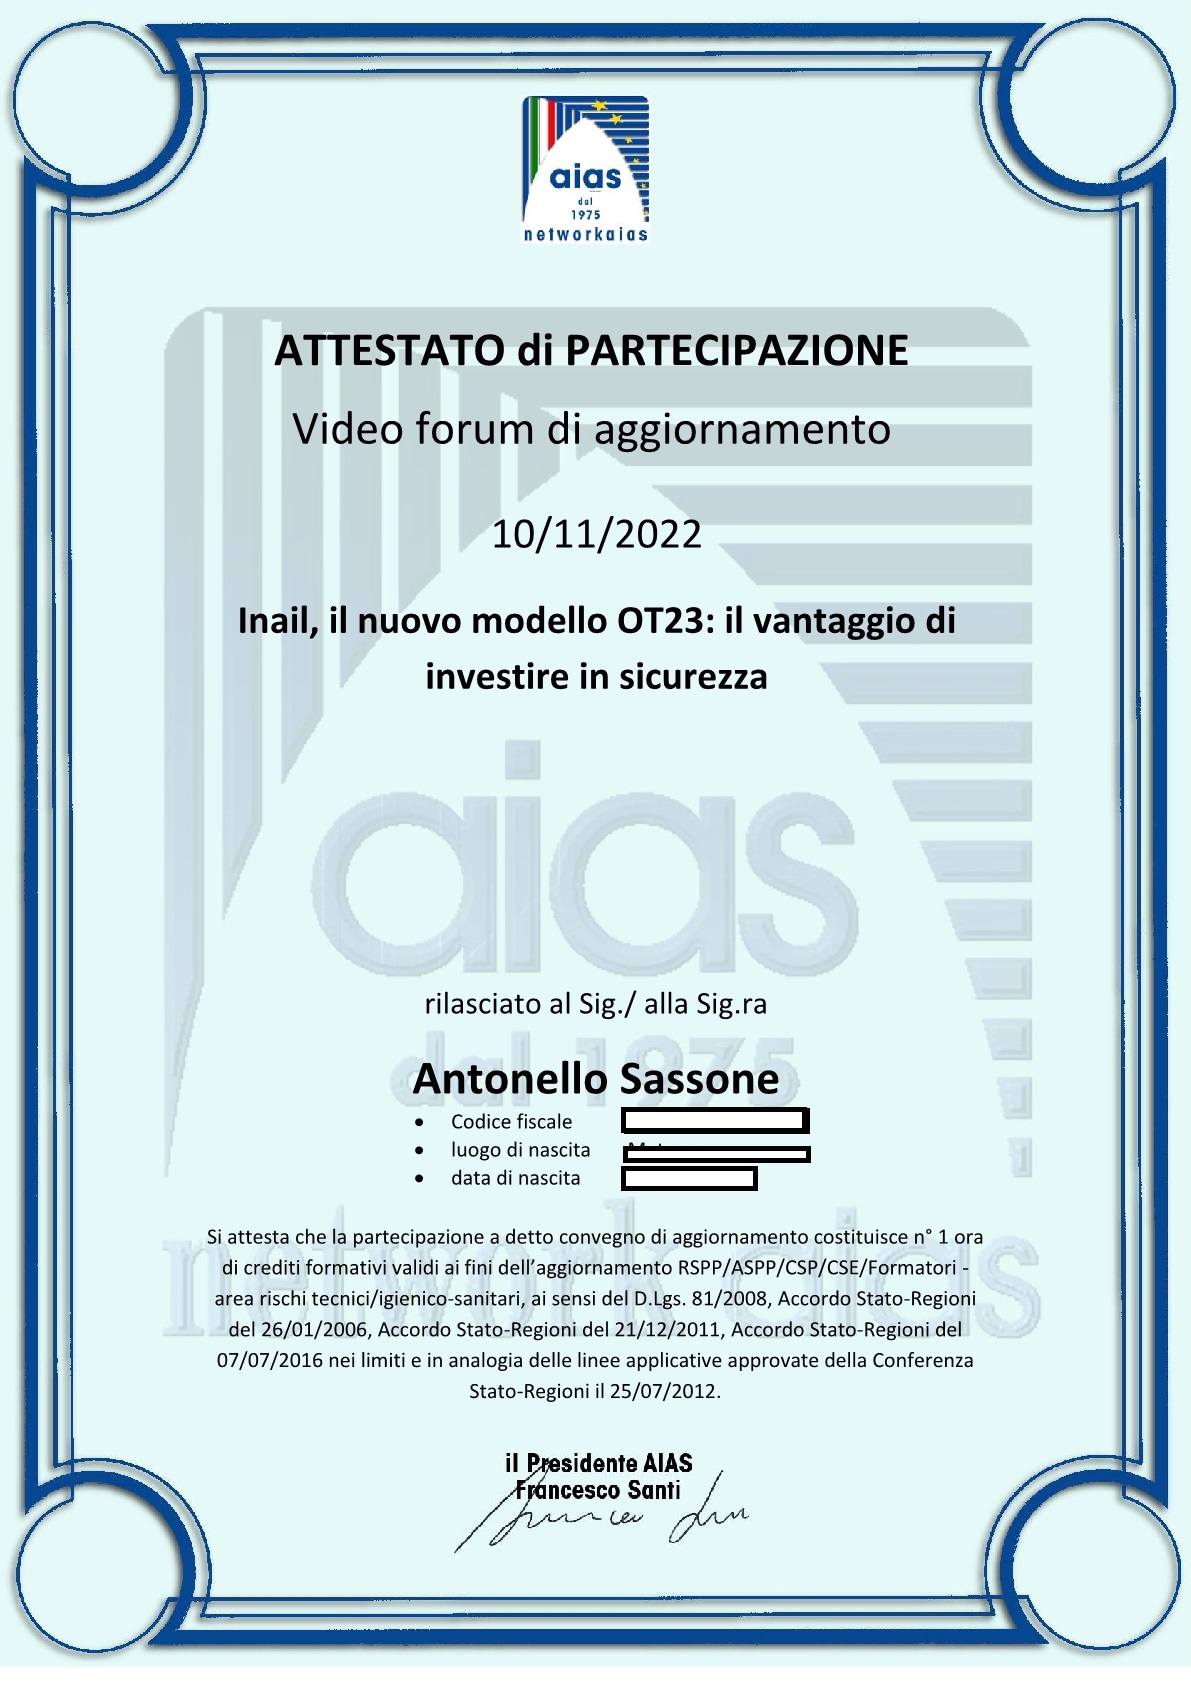 Attachment 202211.10 Attestato AIAS OT23.jpg